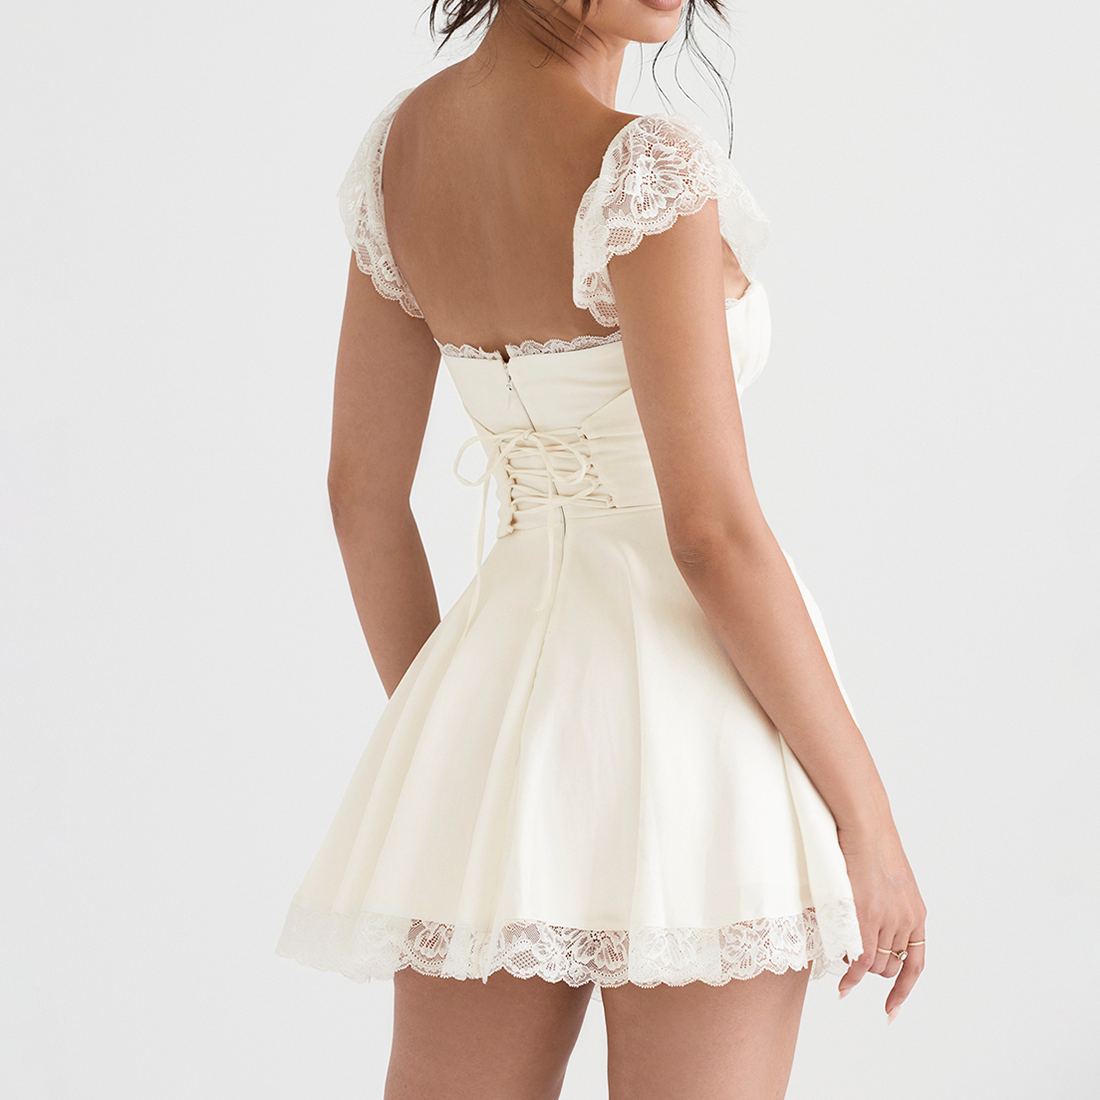 Sexy corset robe blanc dentelle vue de dos